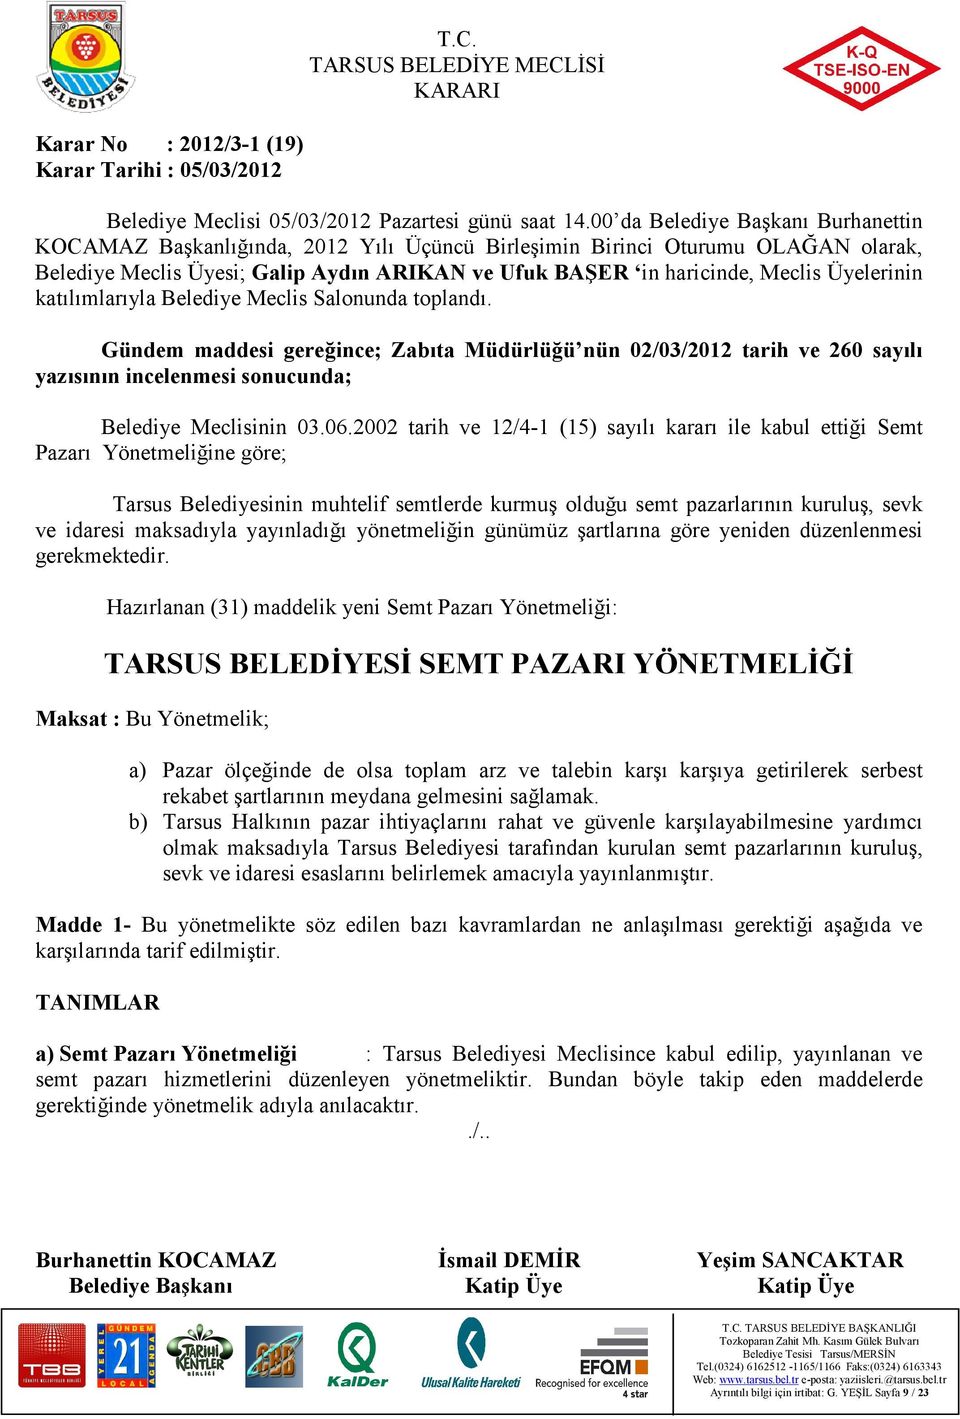 2002 tarih ve 12/4-1 (15) sayılı kararı ile kabul ettiği Semt Pazarı Yönetmeliğine göre; Tarsus Belediyesinin muhtelif semtlerde kurmuş olduğu semt pazarlarının kuruluş, sevk ve idaresi maksadıyla